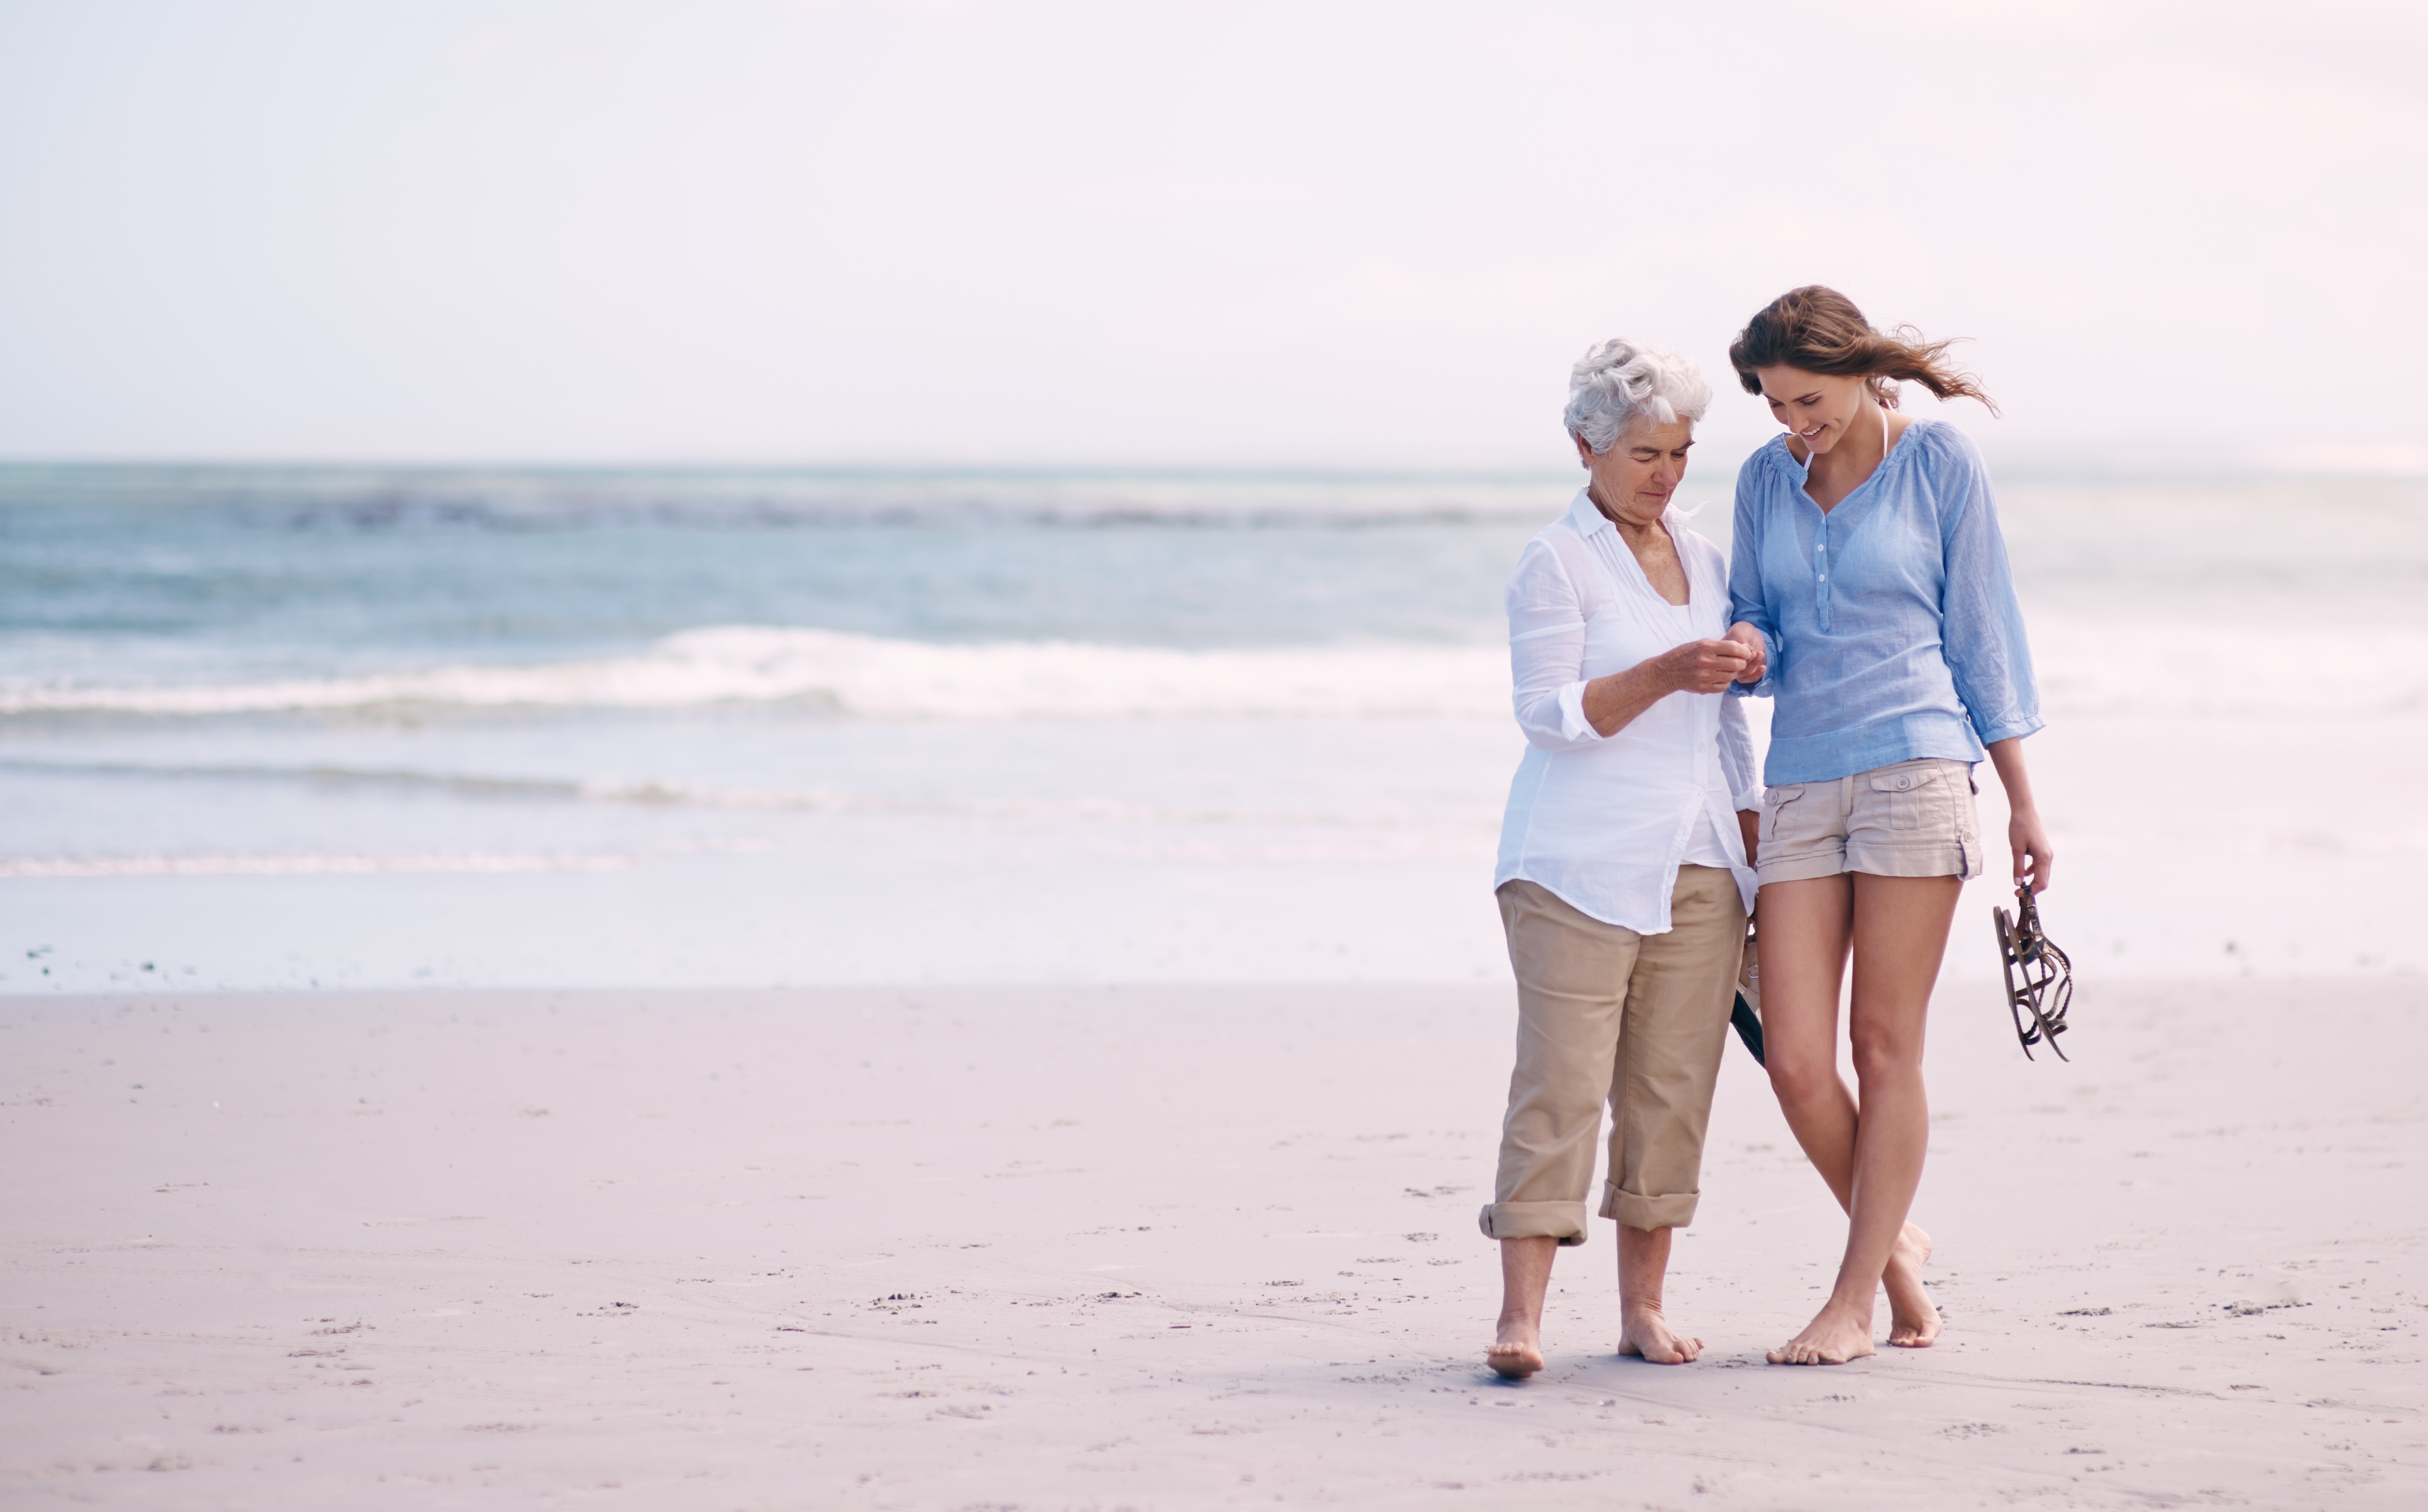 Madre e hija pasando un buen rato en la playa | Fuente: Shutterstock